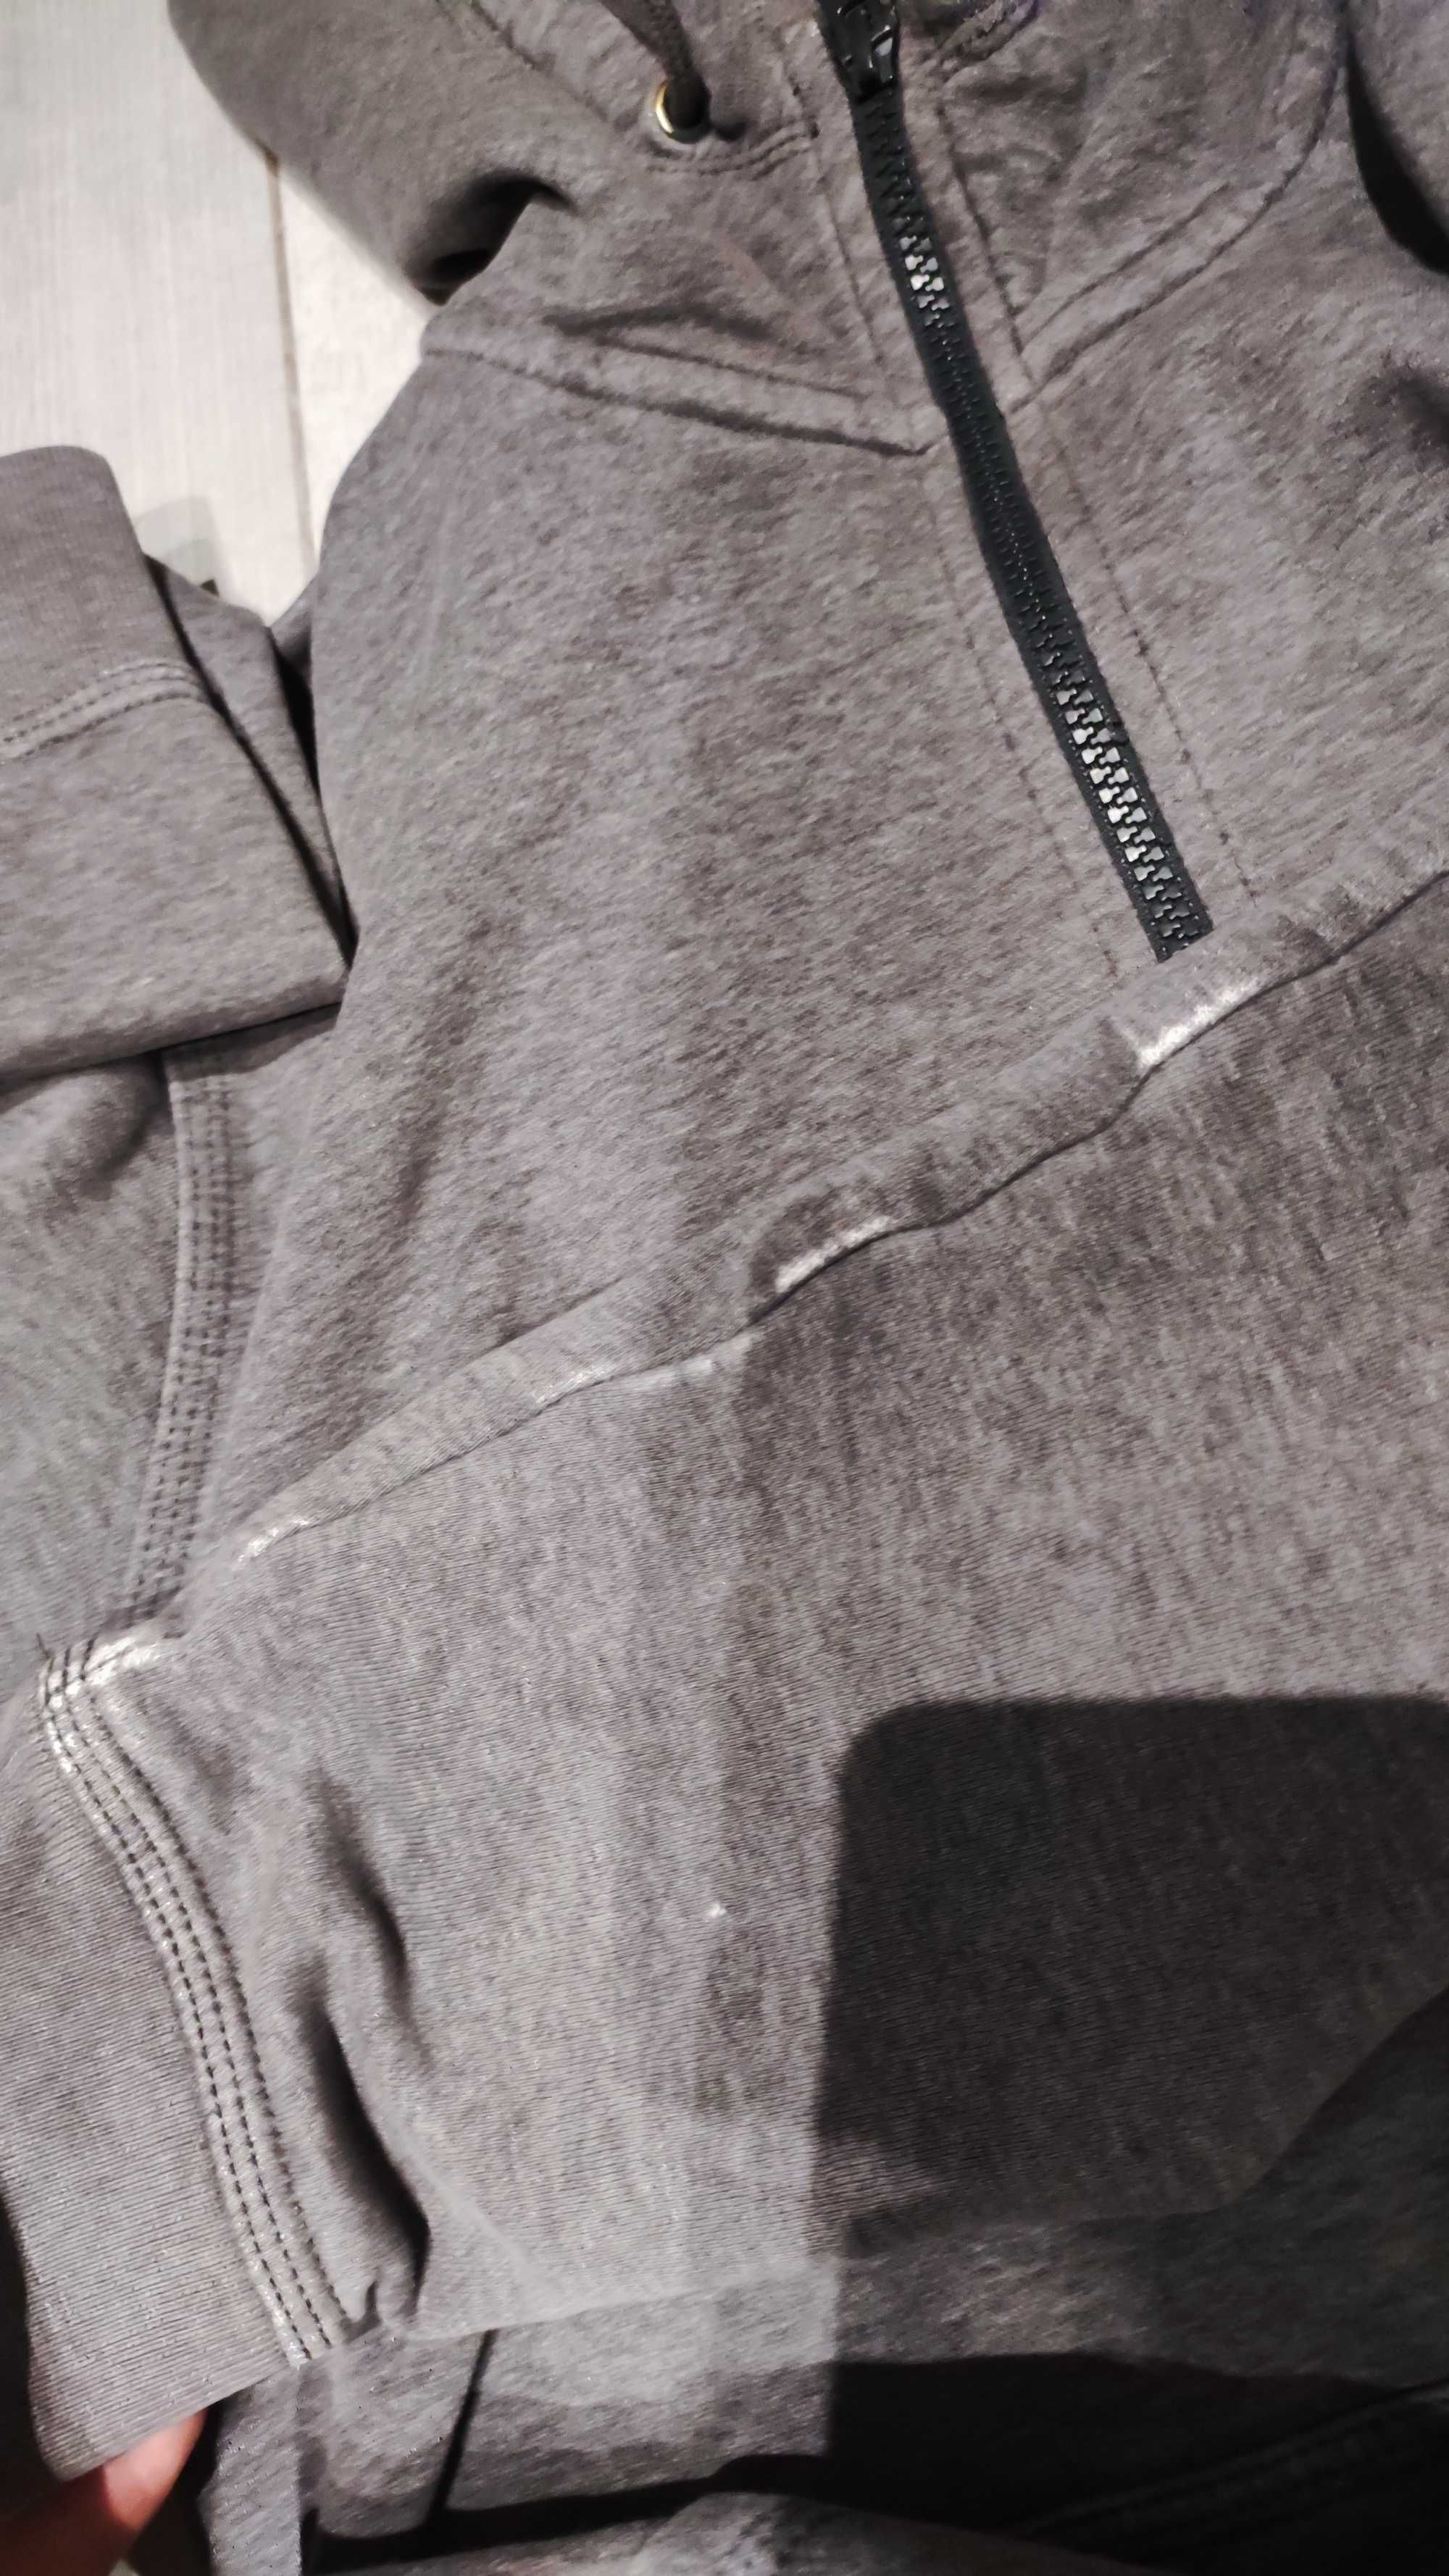 Bluza szara Nike M oldschool vintage hoodie